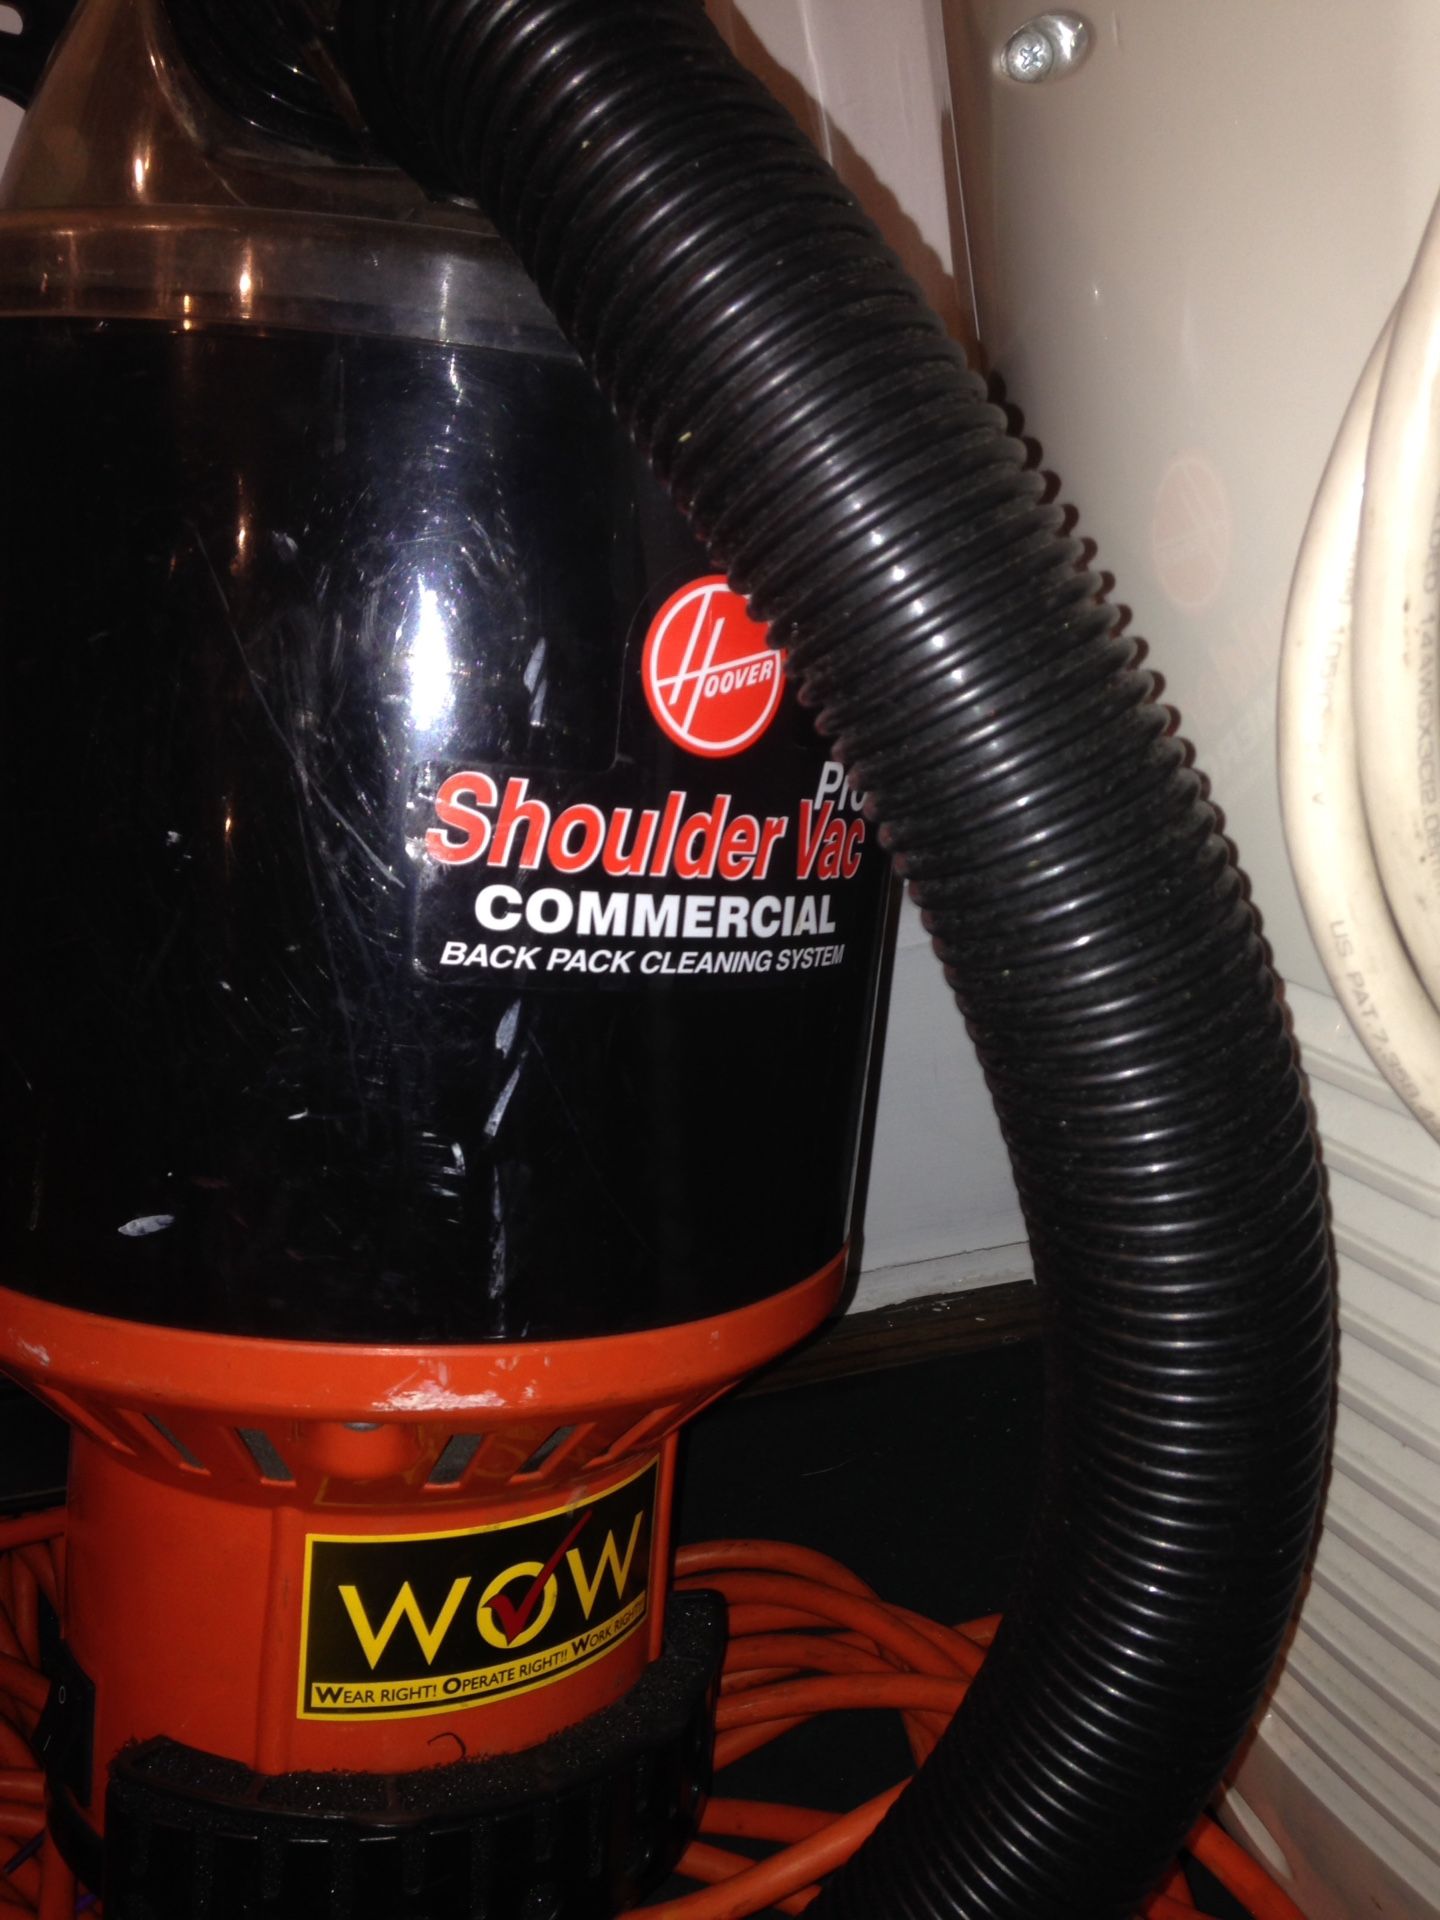 Shoulder vacuum commercial Hoover